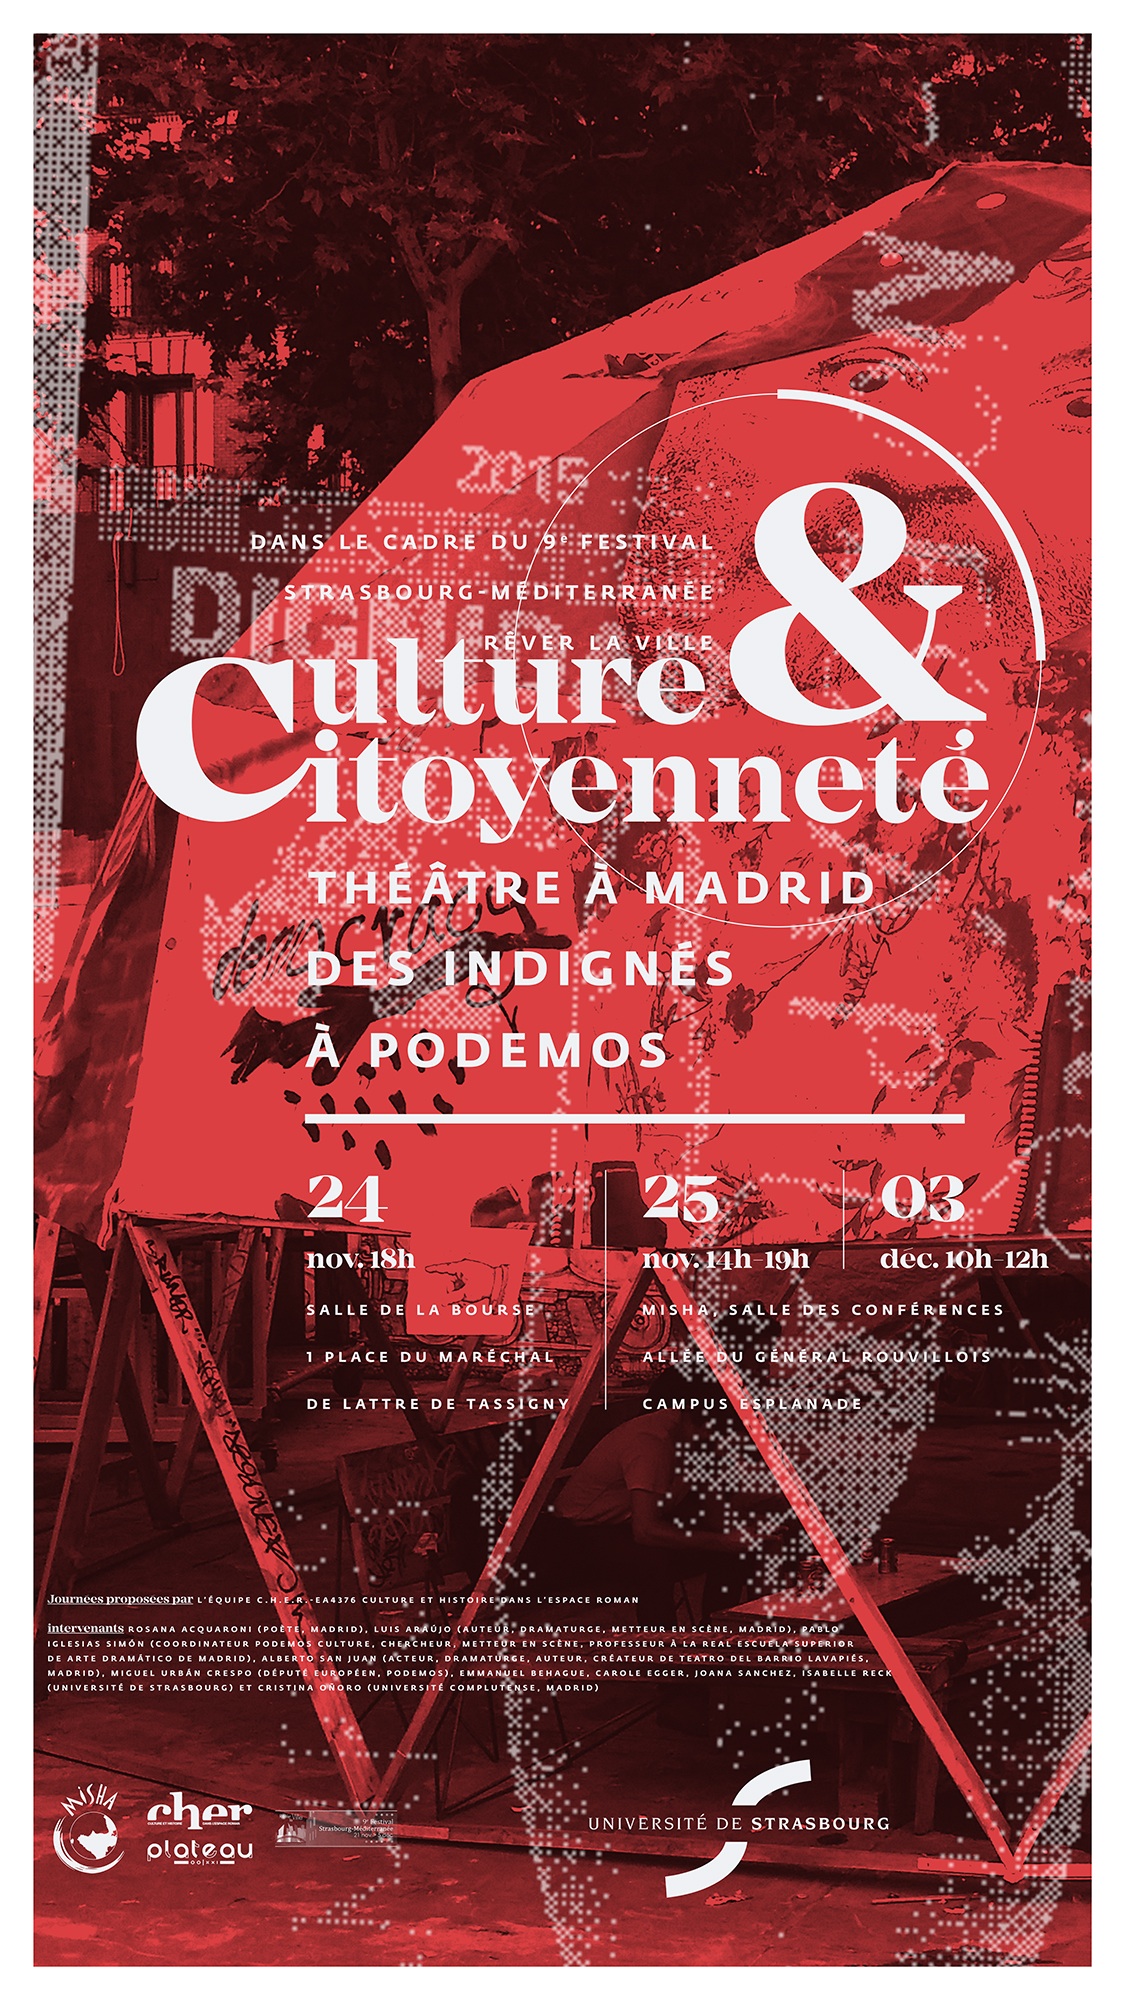 Affiche "Culture & citoyenneté"